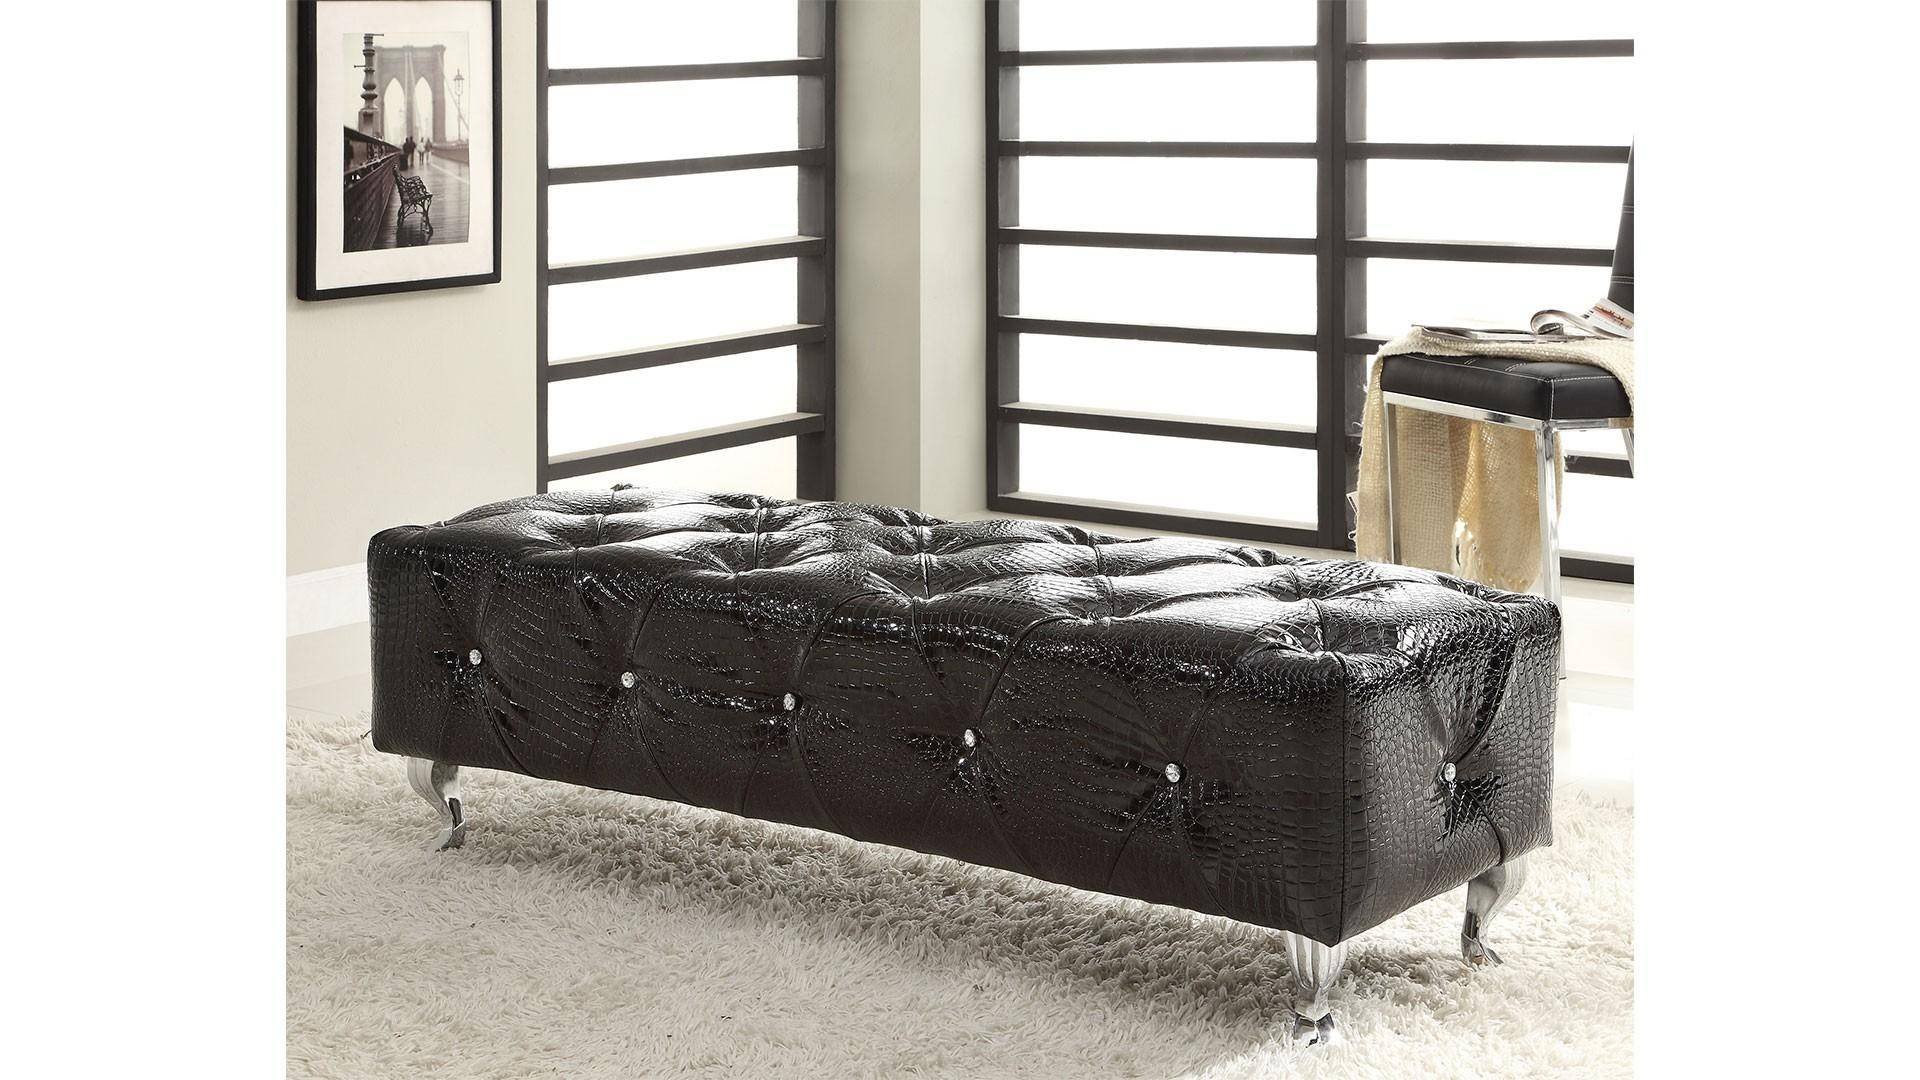 Black Full Size Bedroom Set Luxury at Home Michelle King Platform Bedroom Set 2 Pcs In Black Leather